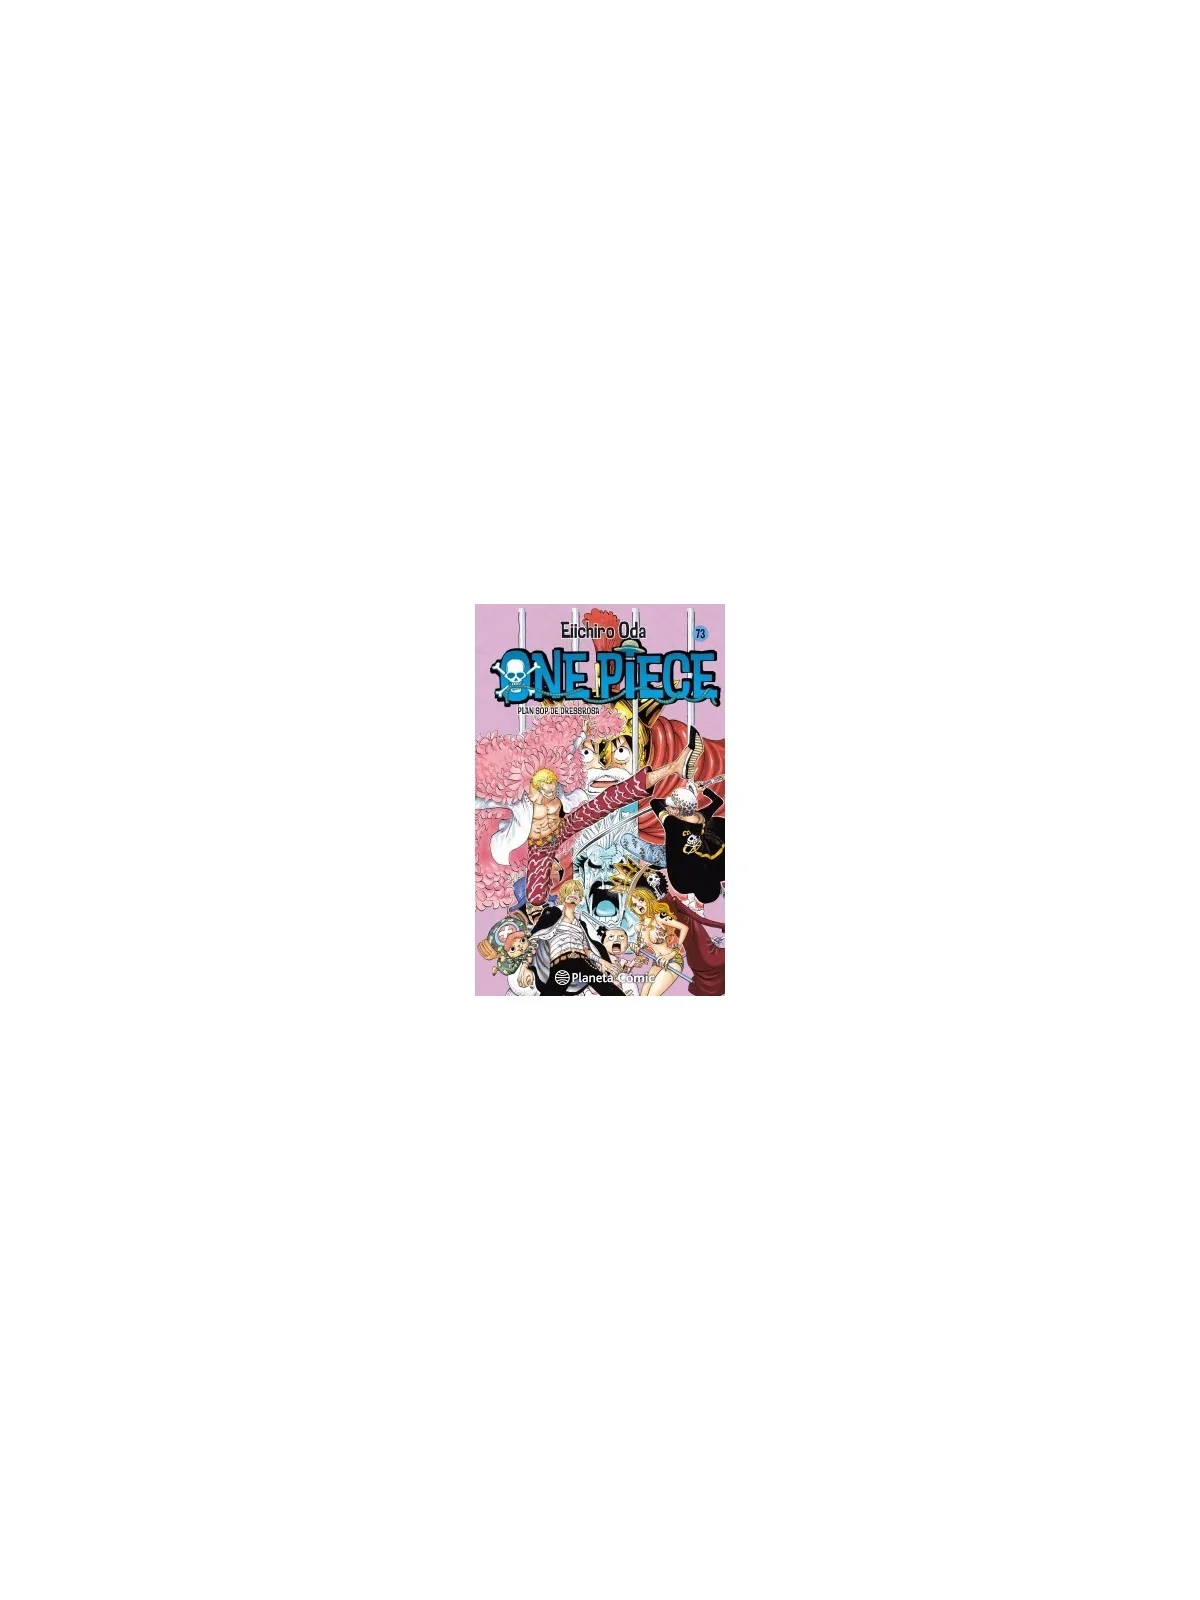 Comprar One Piece 073 barato al mejor precio 7,55 € de Planeta Comic